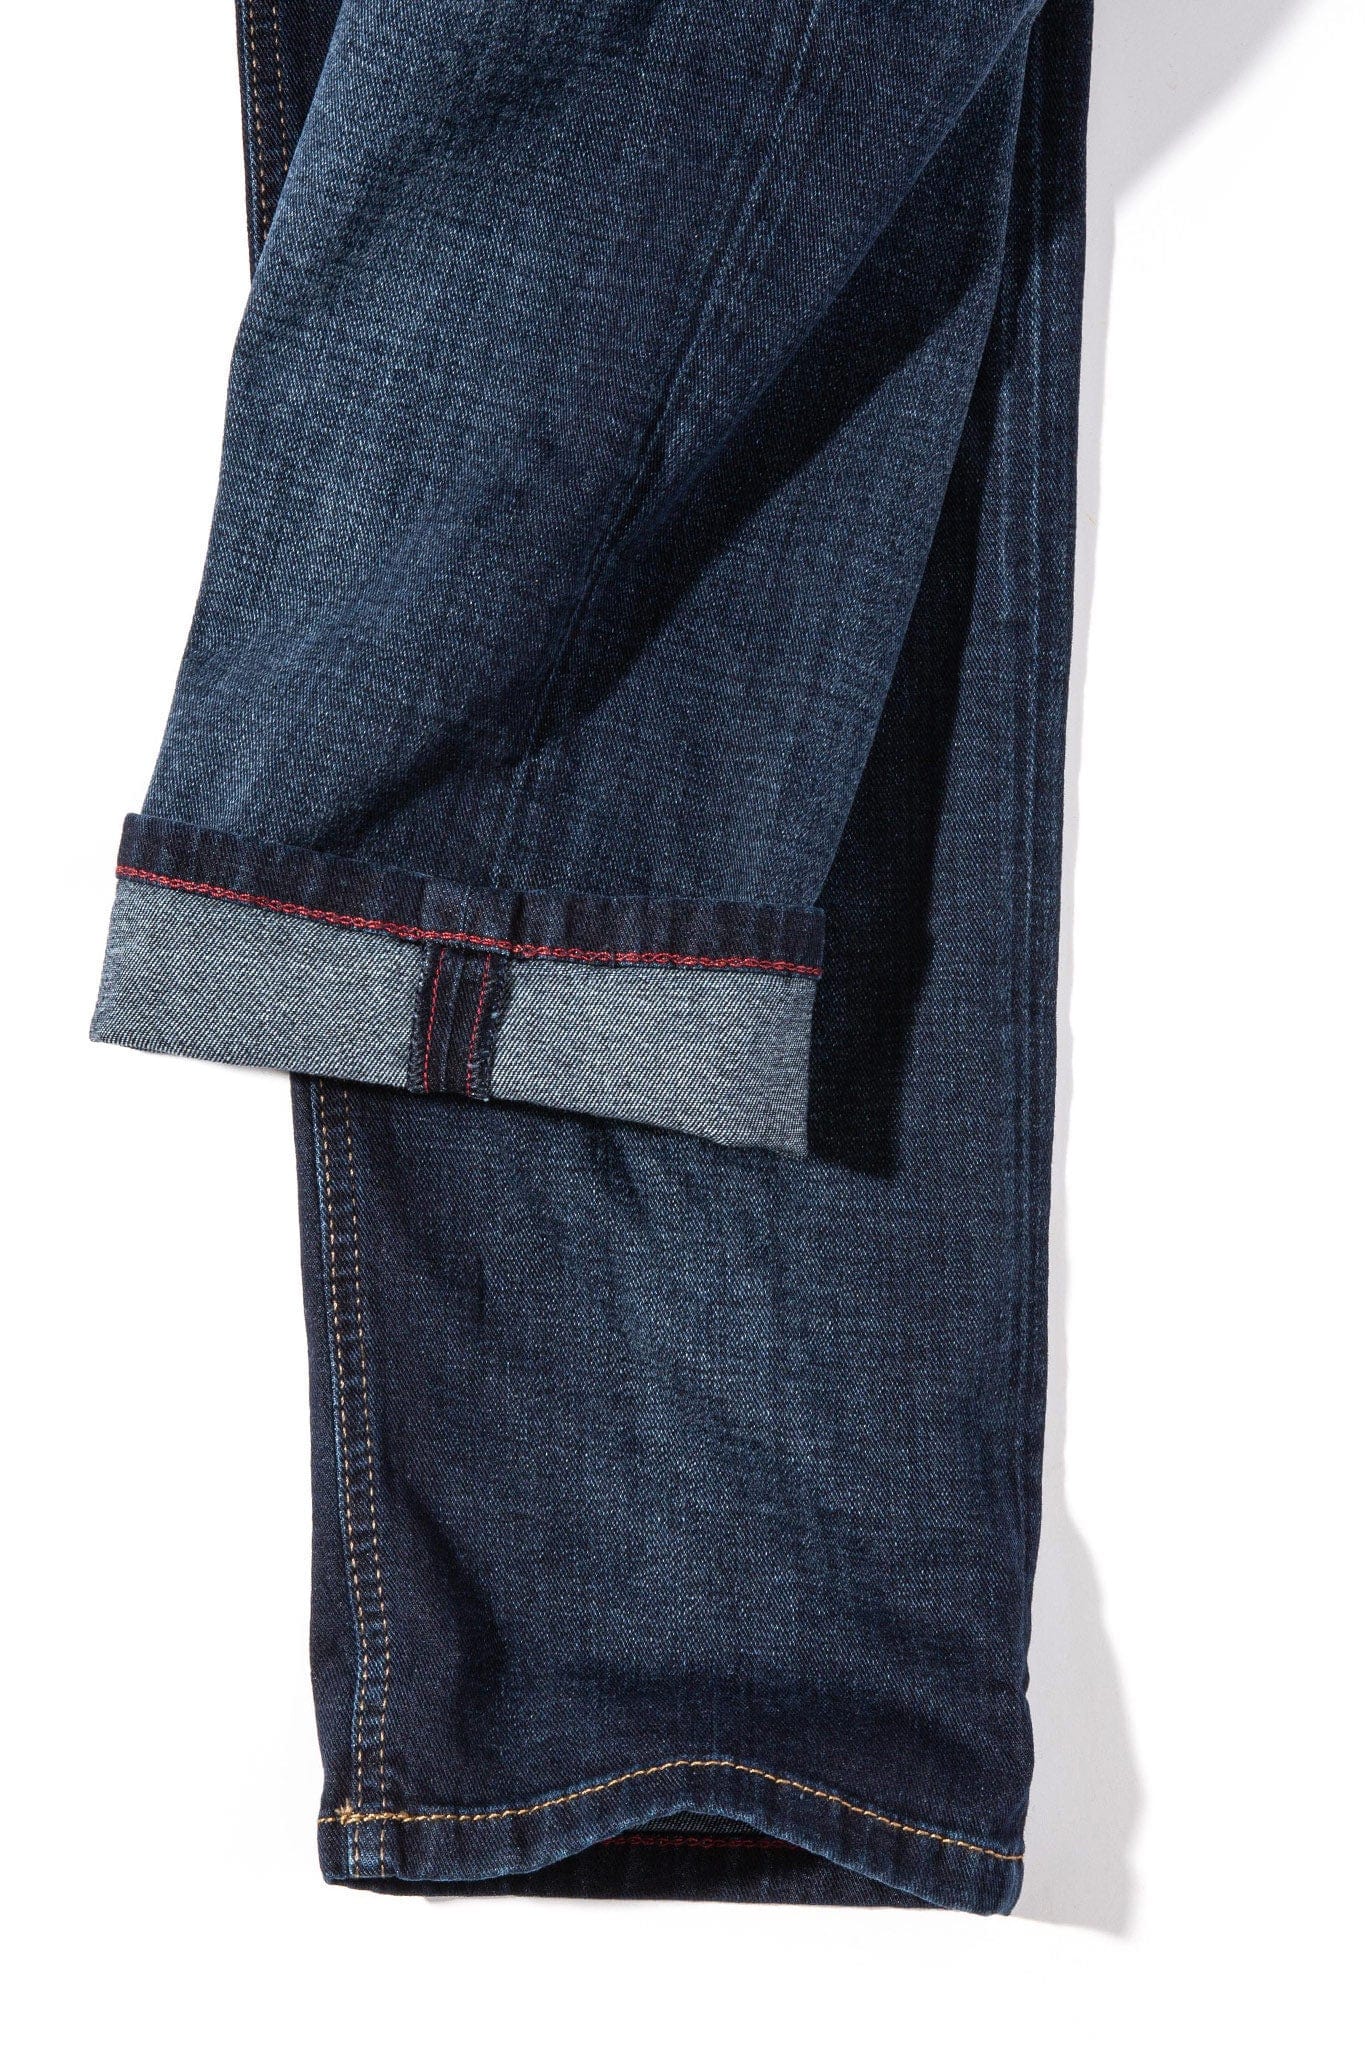 Mac Jeans MAC Arne Jeans in Dark Vintage Blue Mens - Pants - 5 Pocket